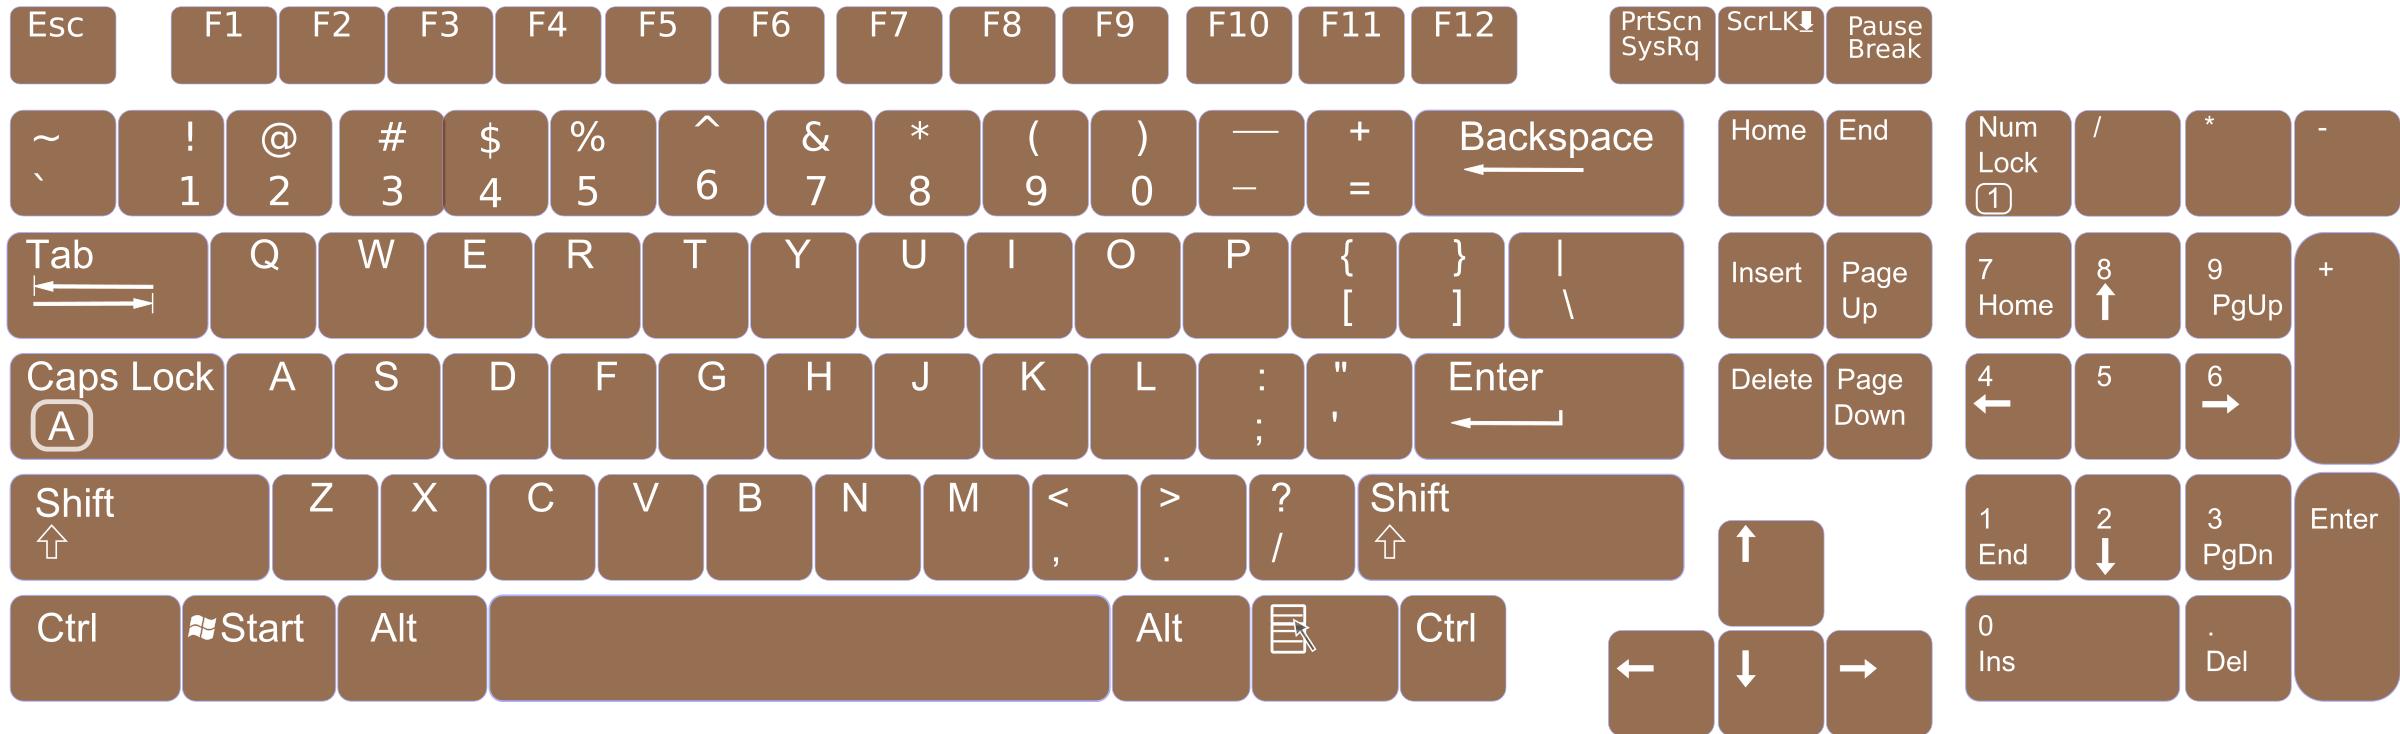 US English Keyboard Layout V0.1 PNG icons